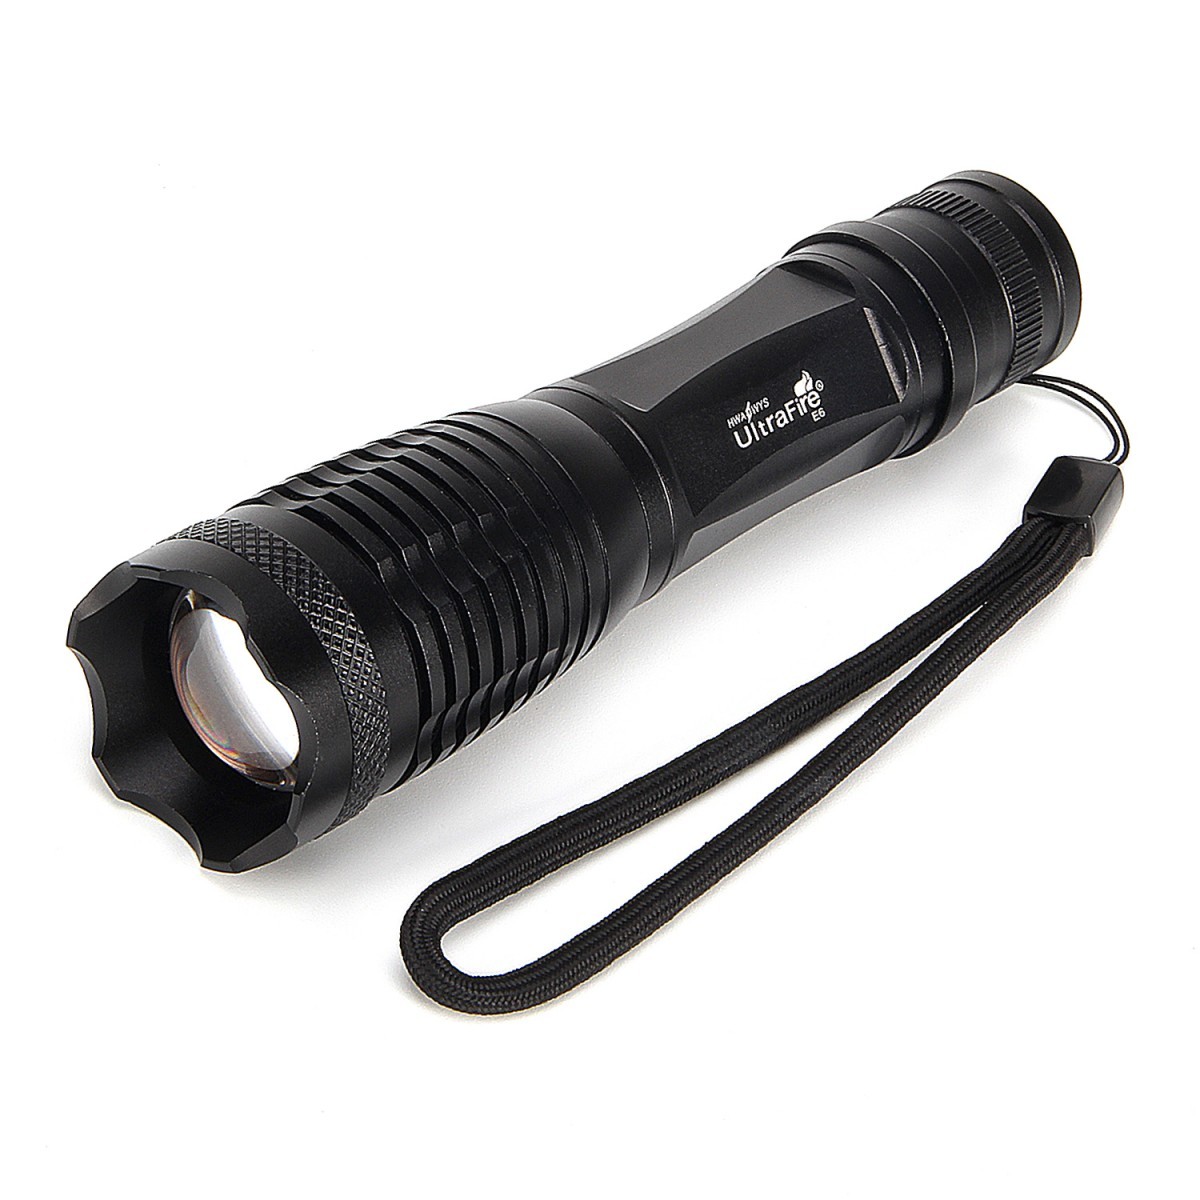 Đèn Pin Ultrafire E5 - Đèn Pin Zoom Chiếu Xa Hàng Chính Hãng Giá Tốt Nhất